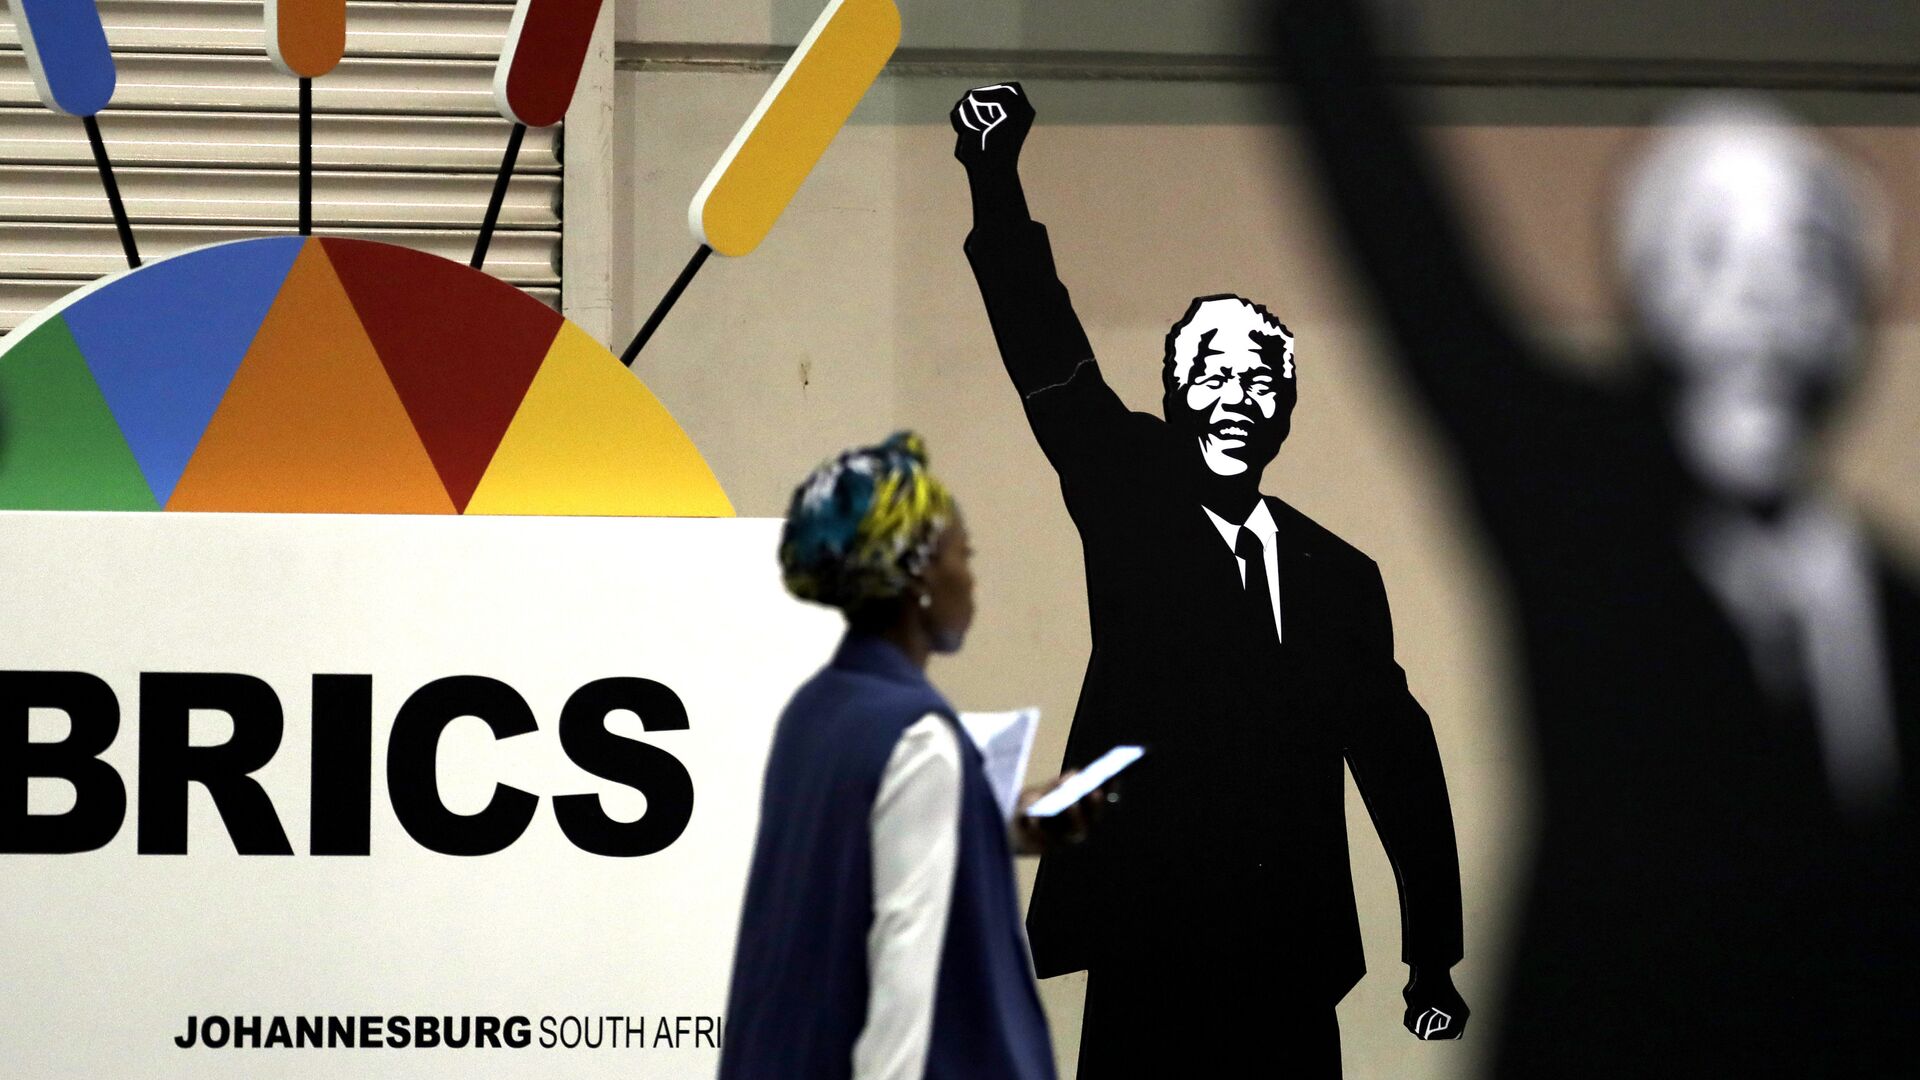 Журналист проходит мимо плаката Нельсона Манделы во время саммита БРИКС в Йоханнесбурге, Южная Африка - Sputnik Азербайджан, 1920, 23.09.2022